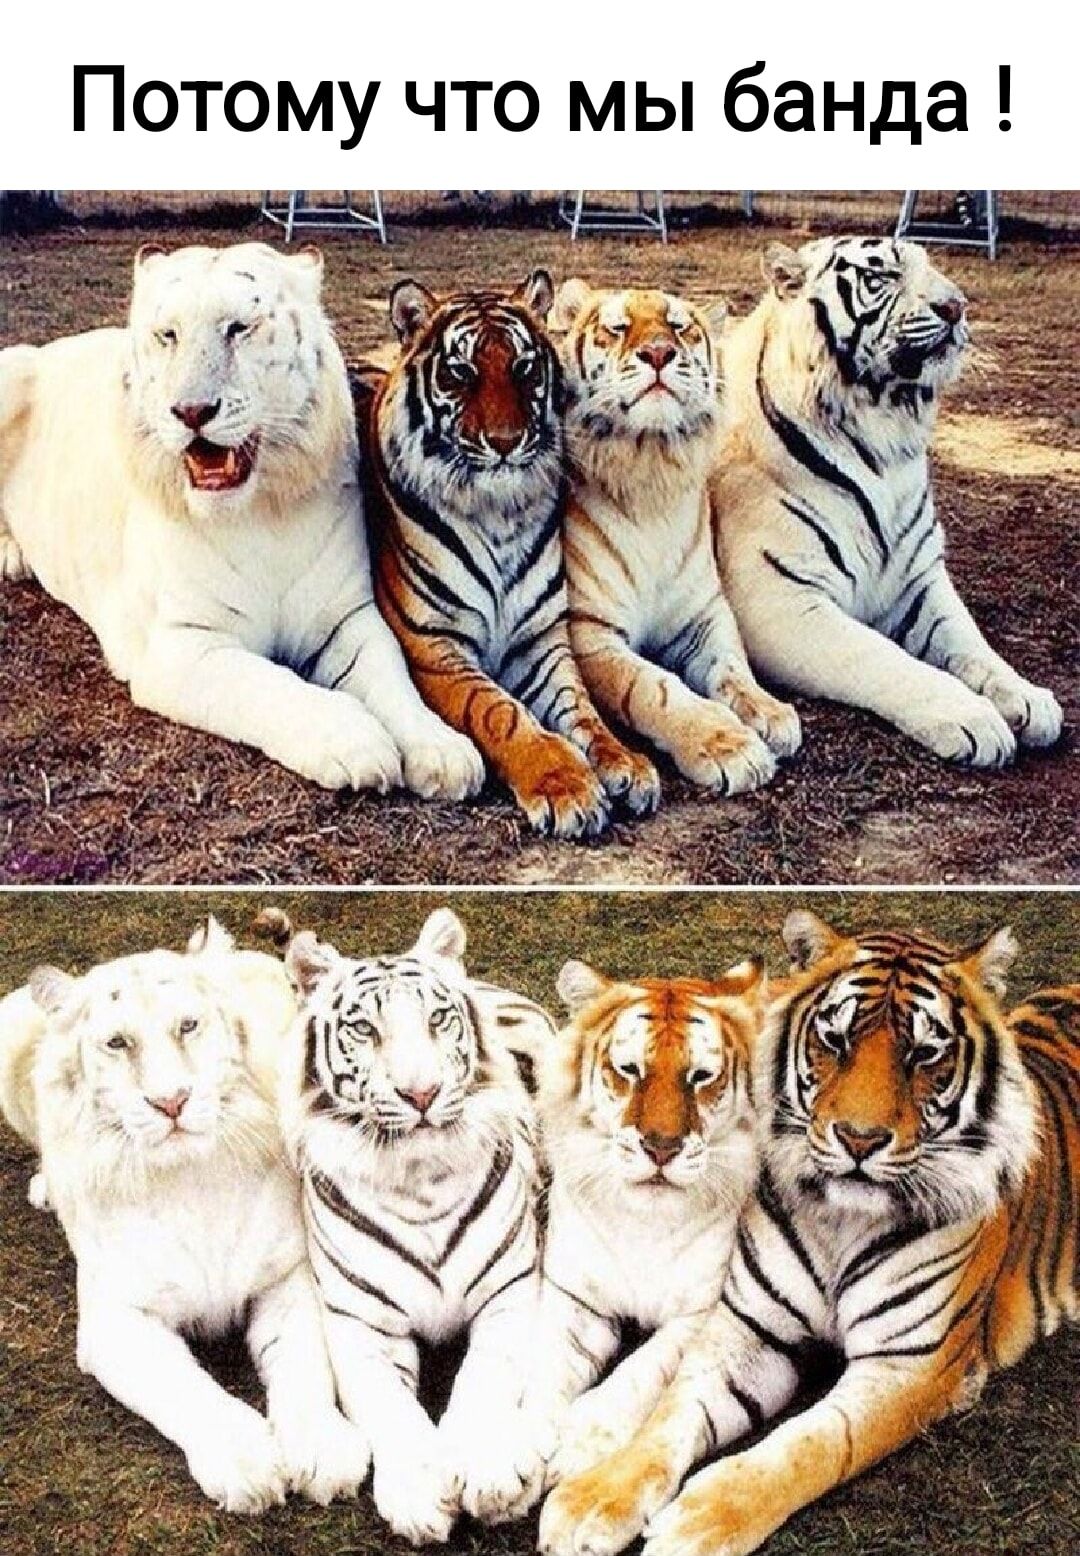 Названия видов тигров. Виды тигров. Расцветки тигров. Тигры разных видов. Редкие тигры.